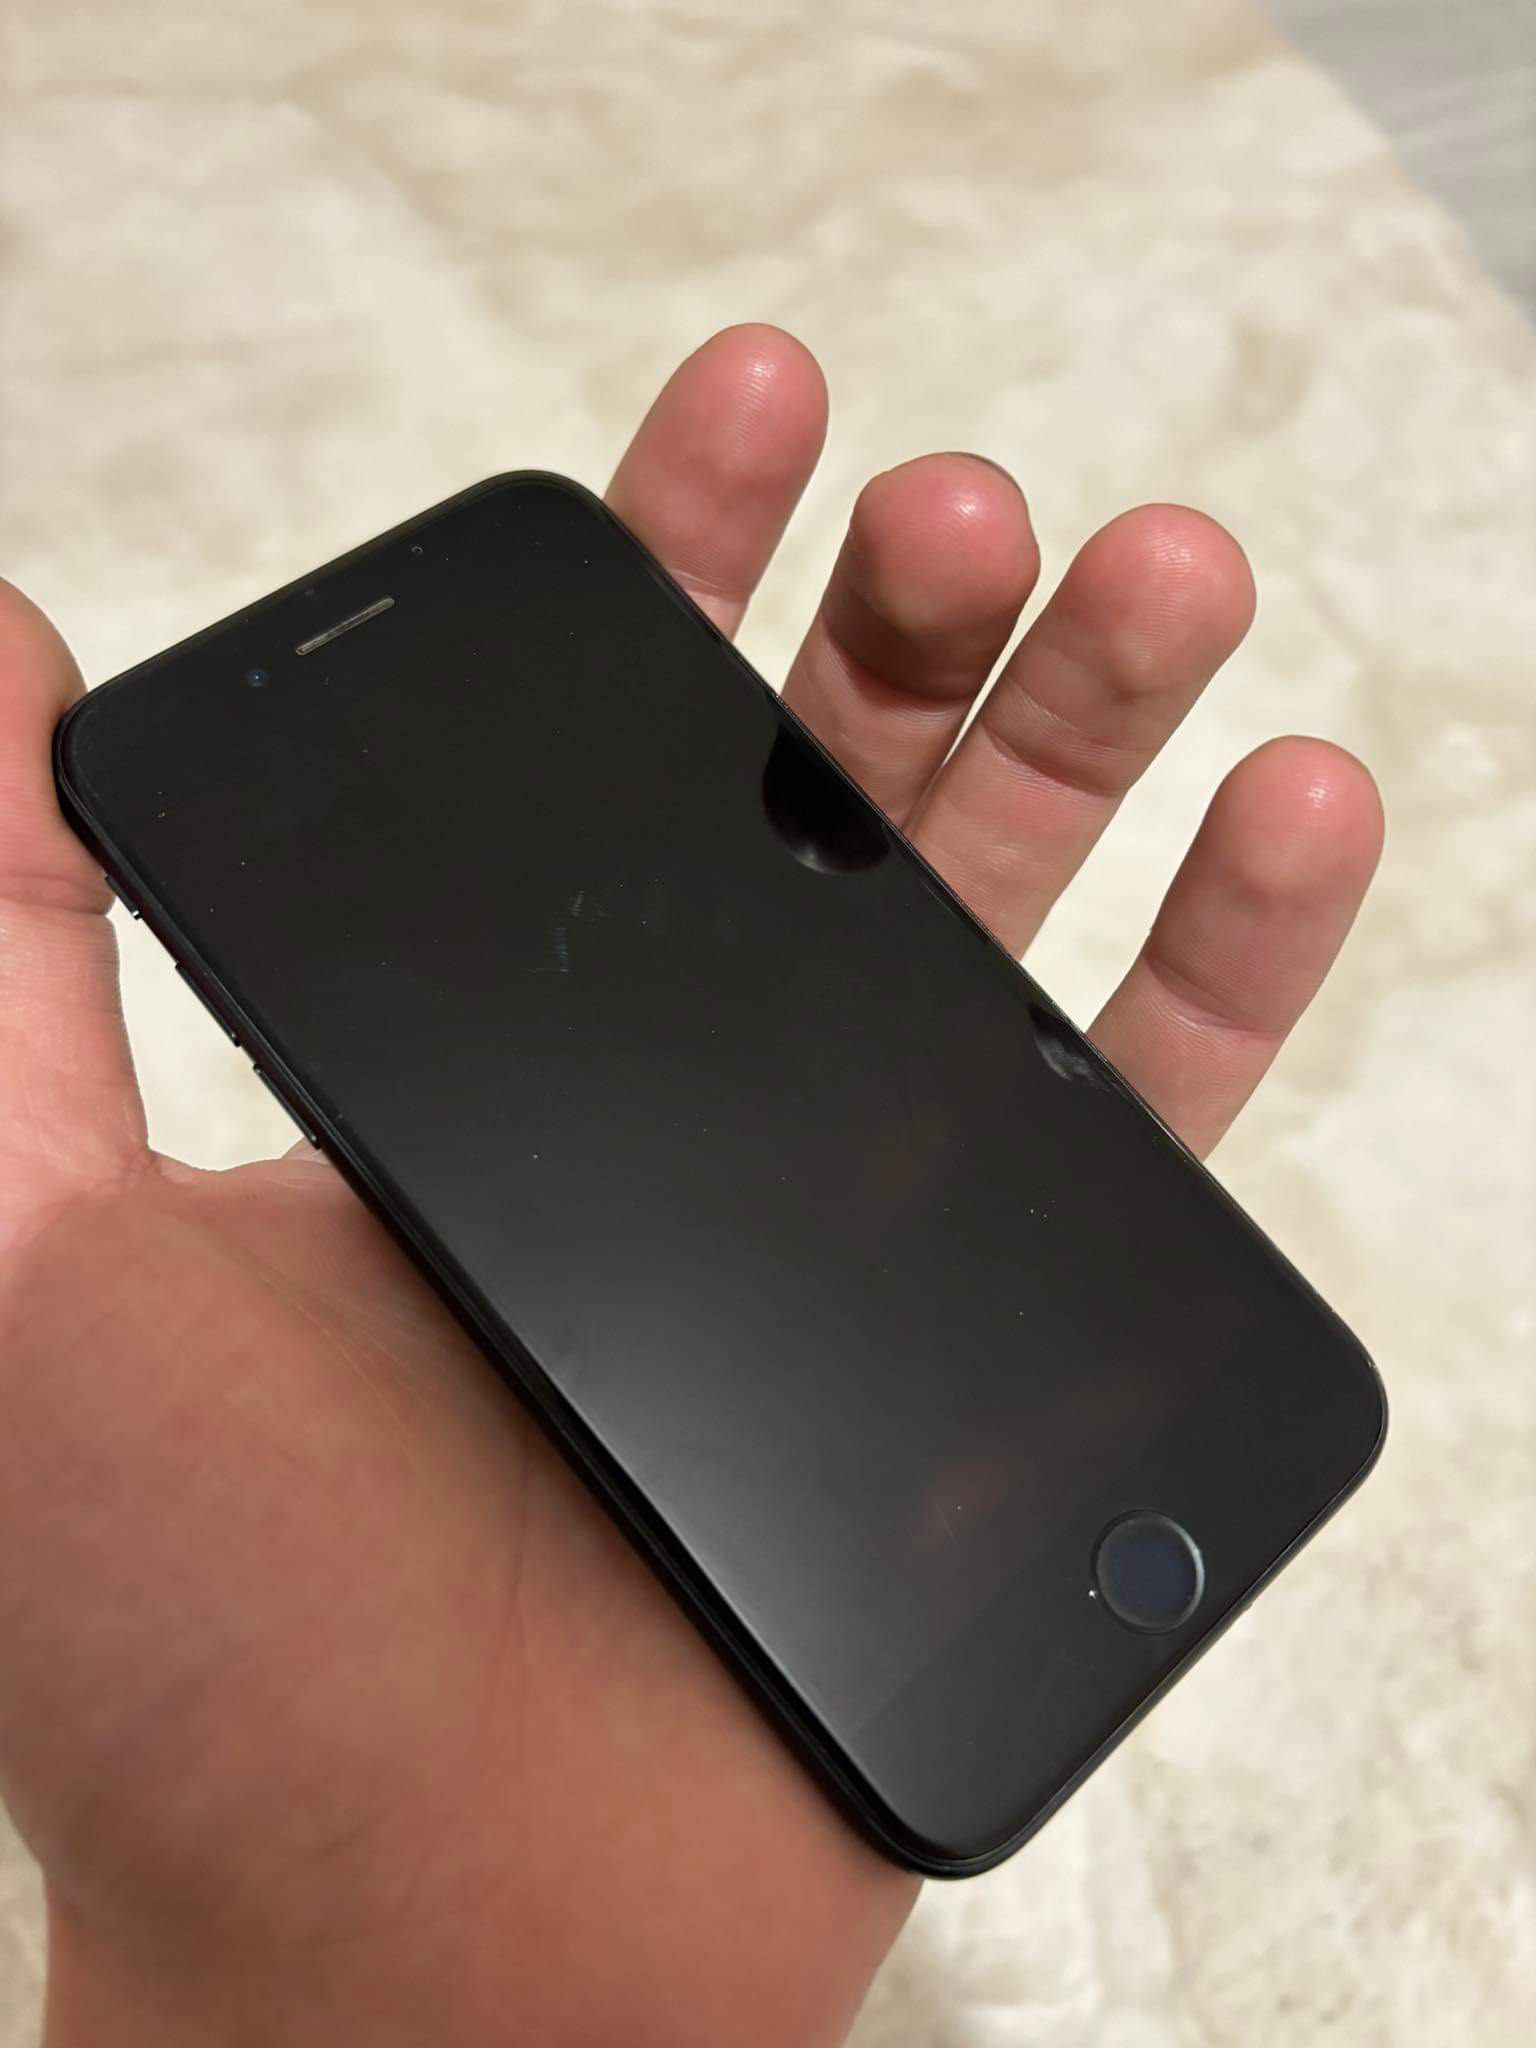 iPhone SE- 64GB, black